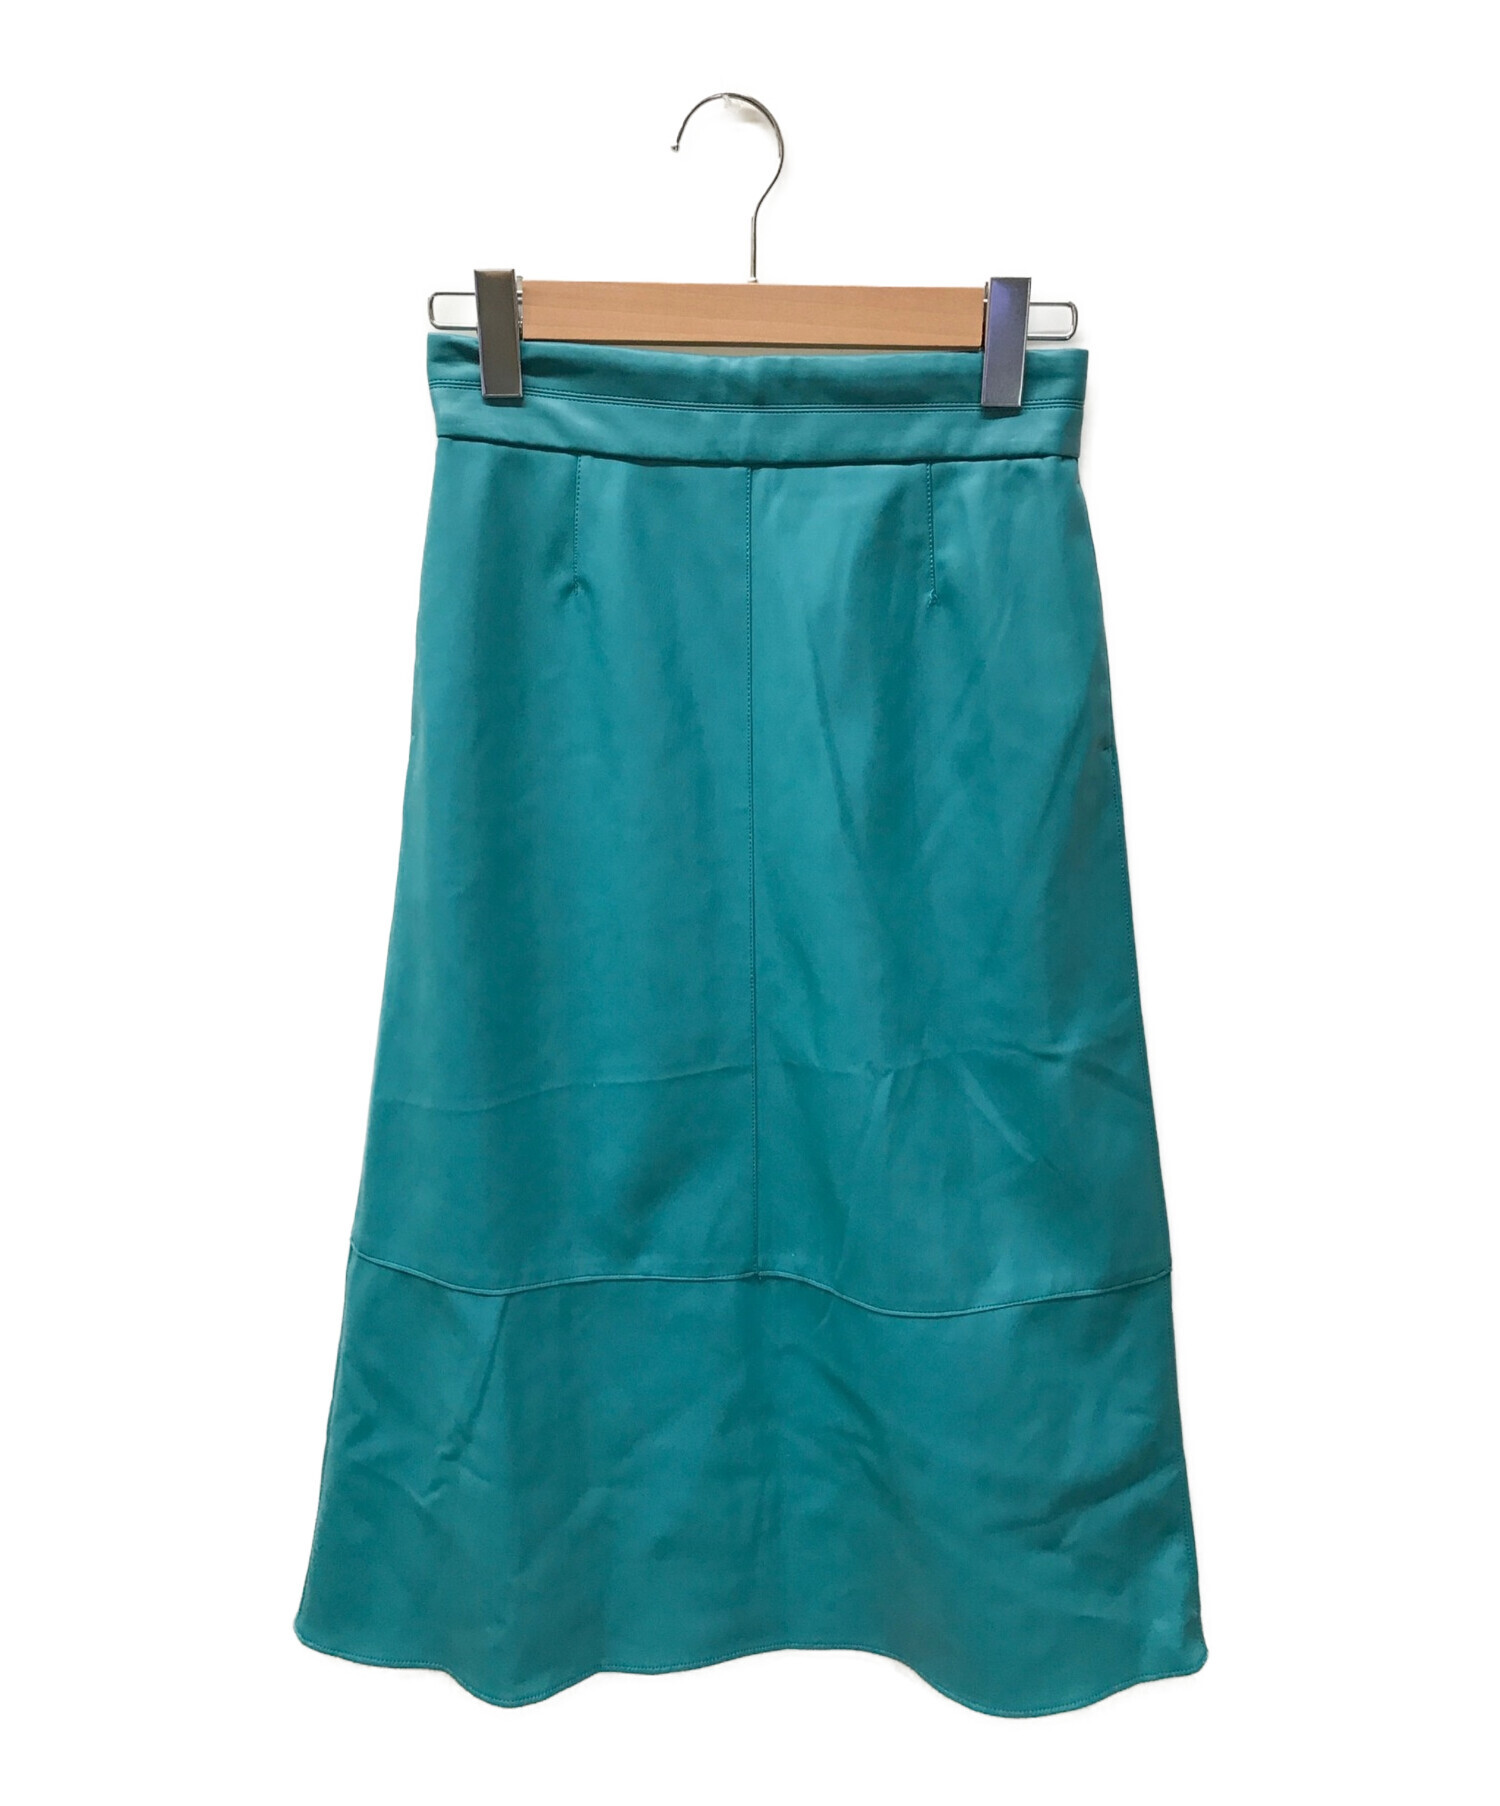 BALLSEY (ボールジィ) フェイクレザー トラペーズスカート ブルー サイズ:34